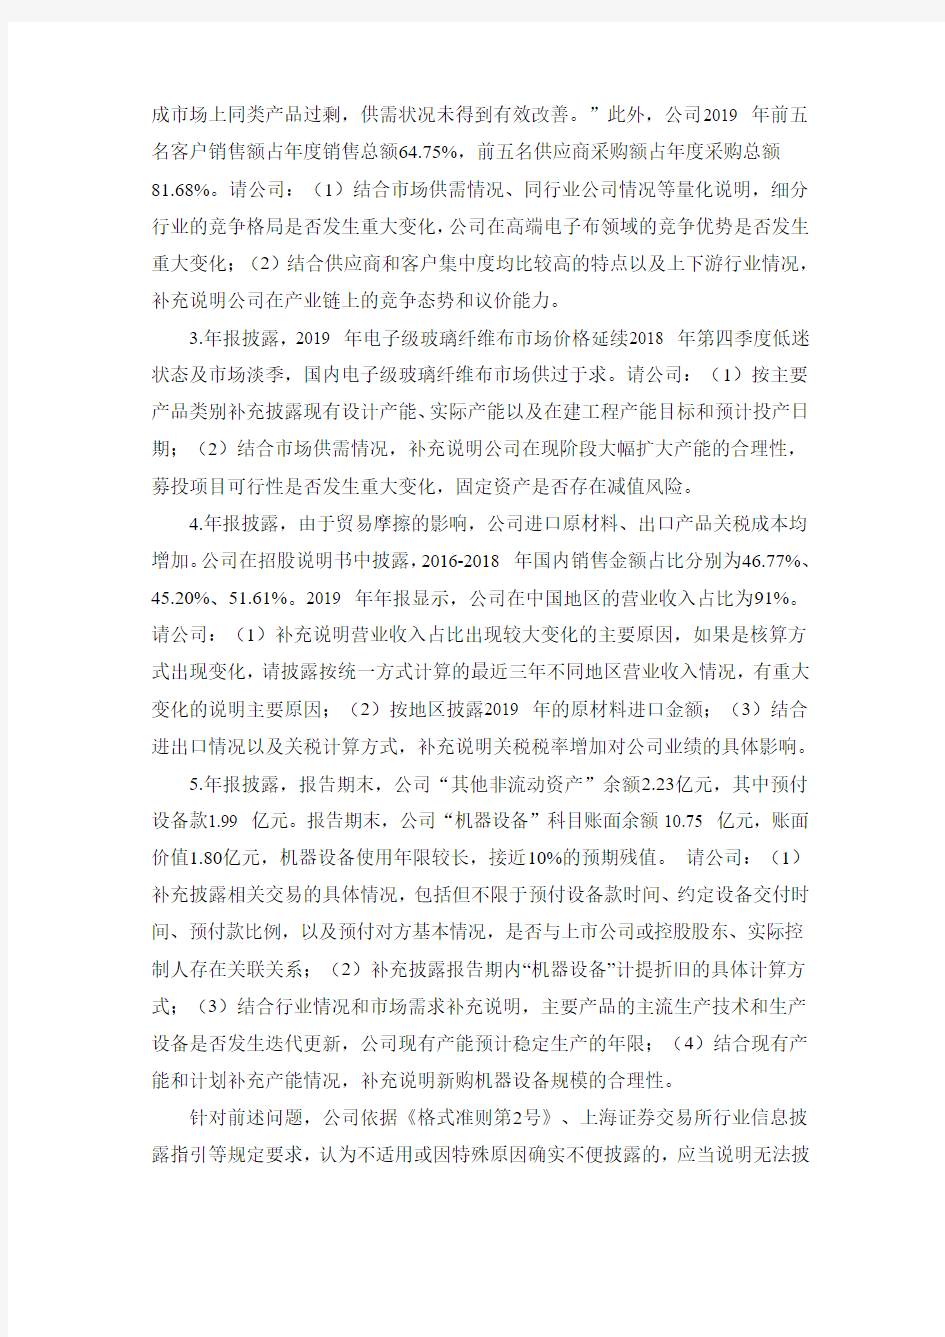 宏和科技：关于收到上海证券交易所问询函的公告